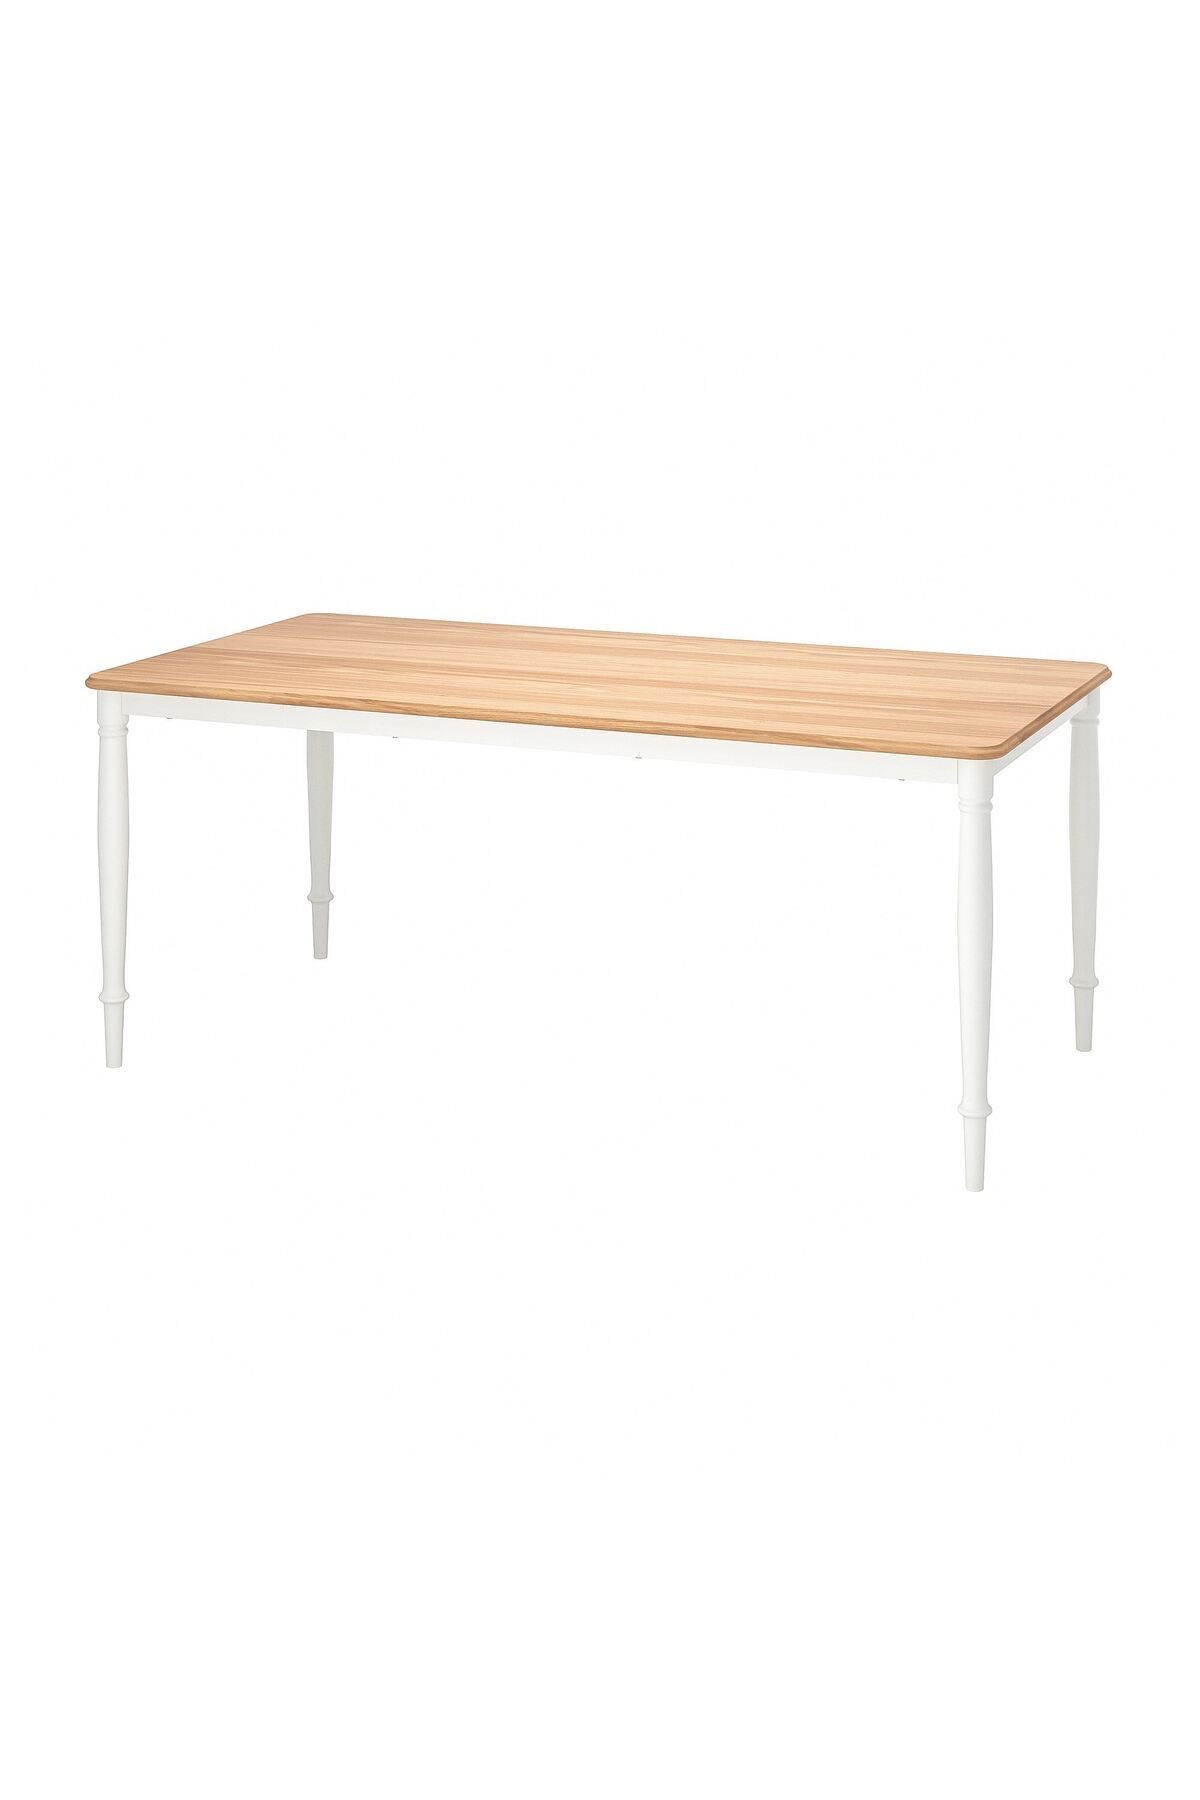 IKEA DANDERYD yemek masası, beyaz-meşe kaplama, 180x90 cm, 6-8 kişilik